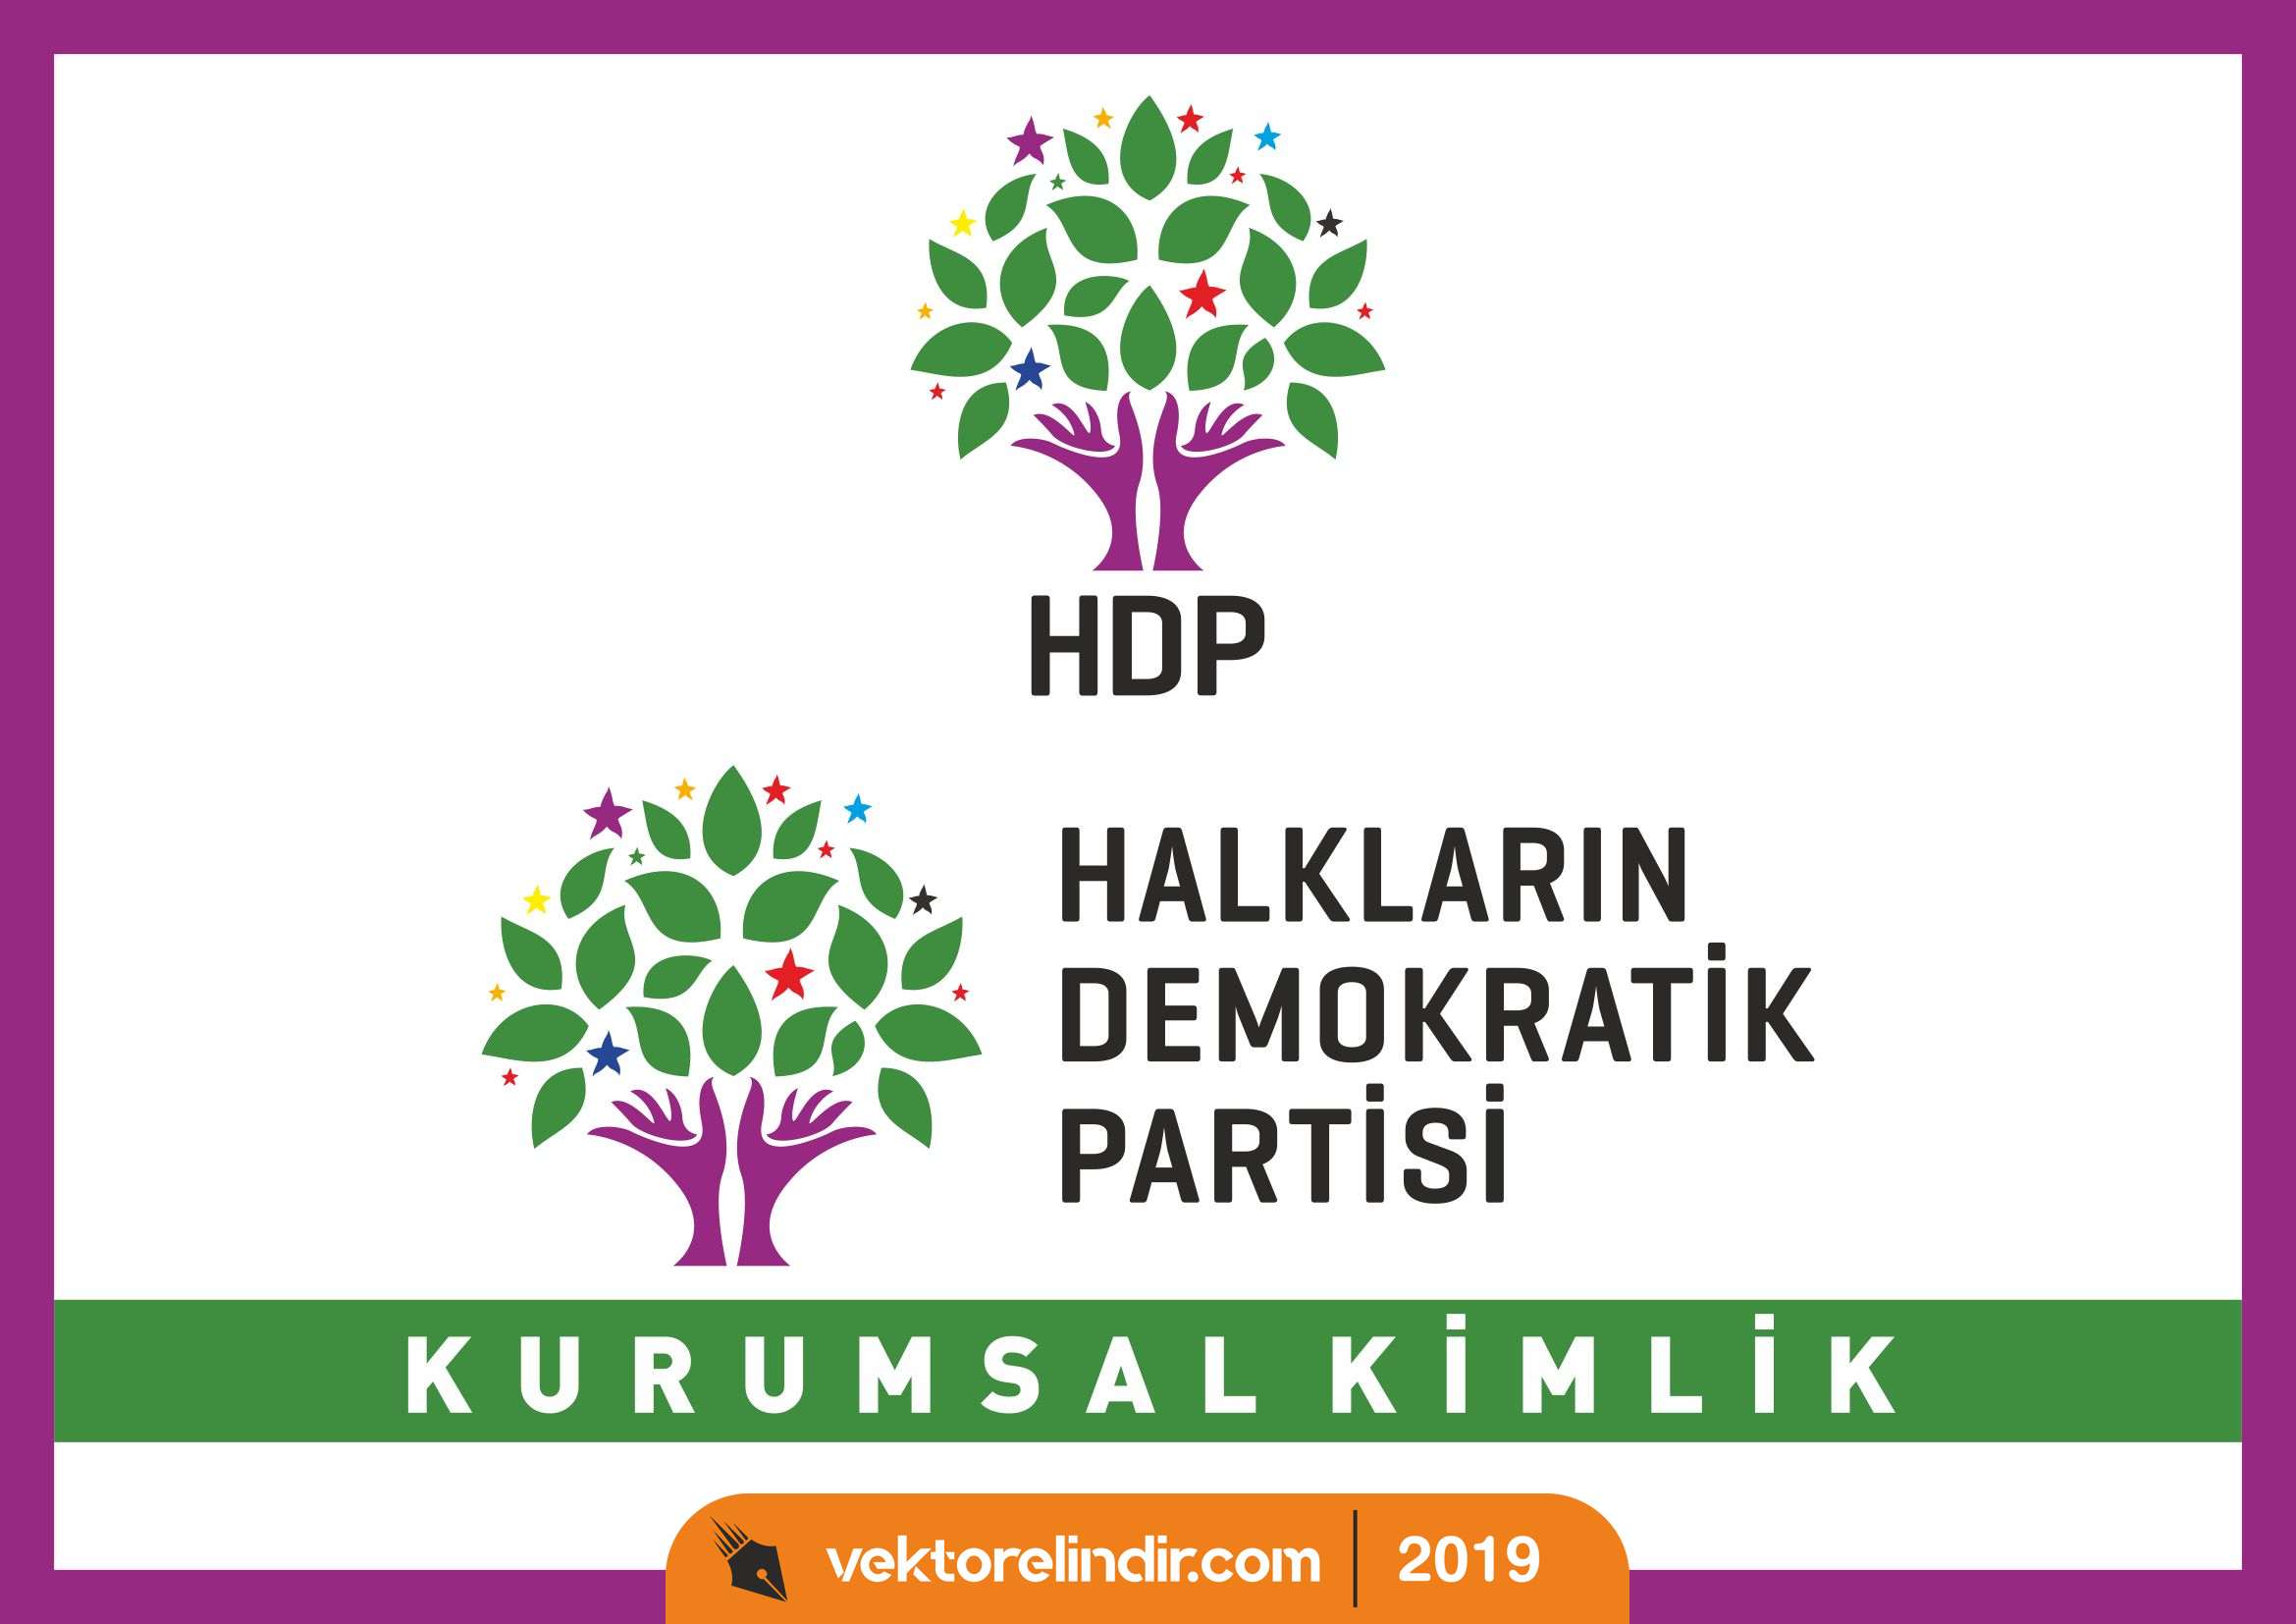 HDP Kurumsal Kimlik, Halkların Demokratik Partisi Logo, Amblem